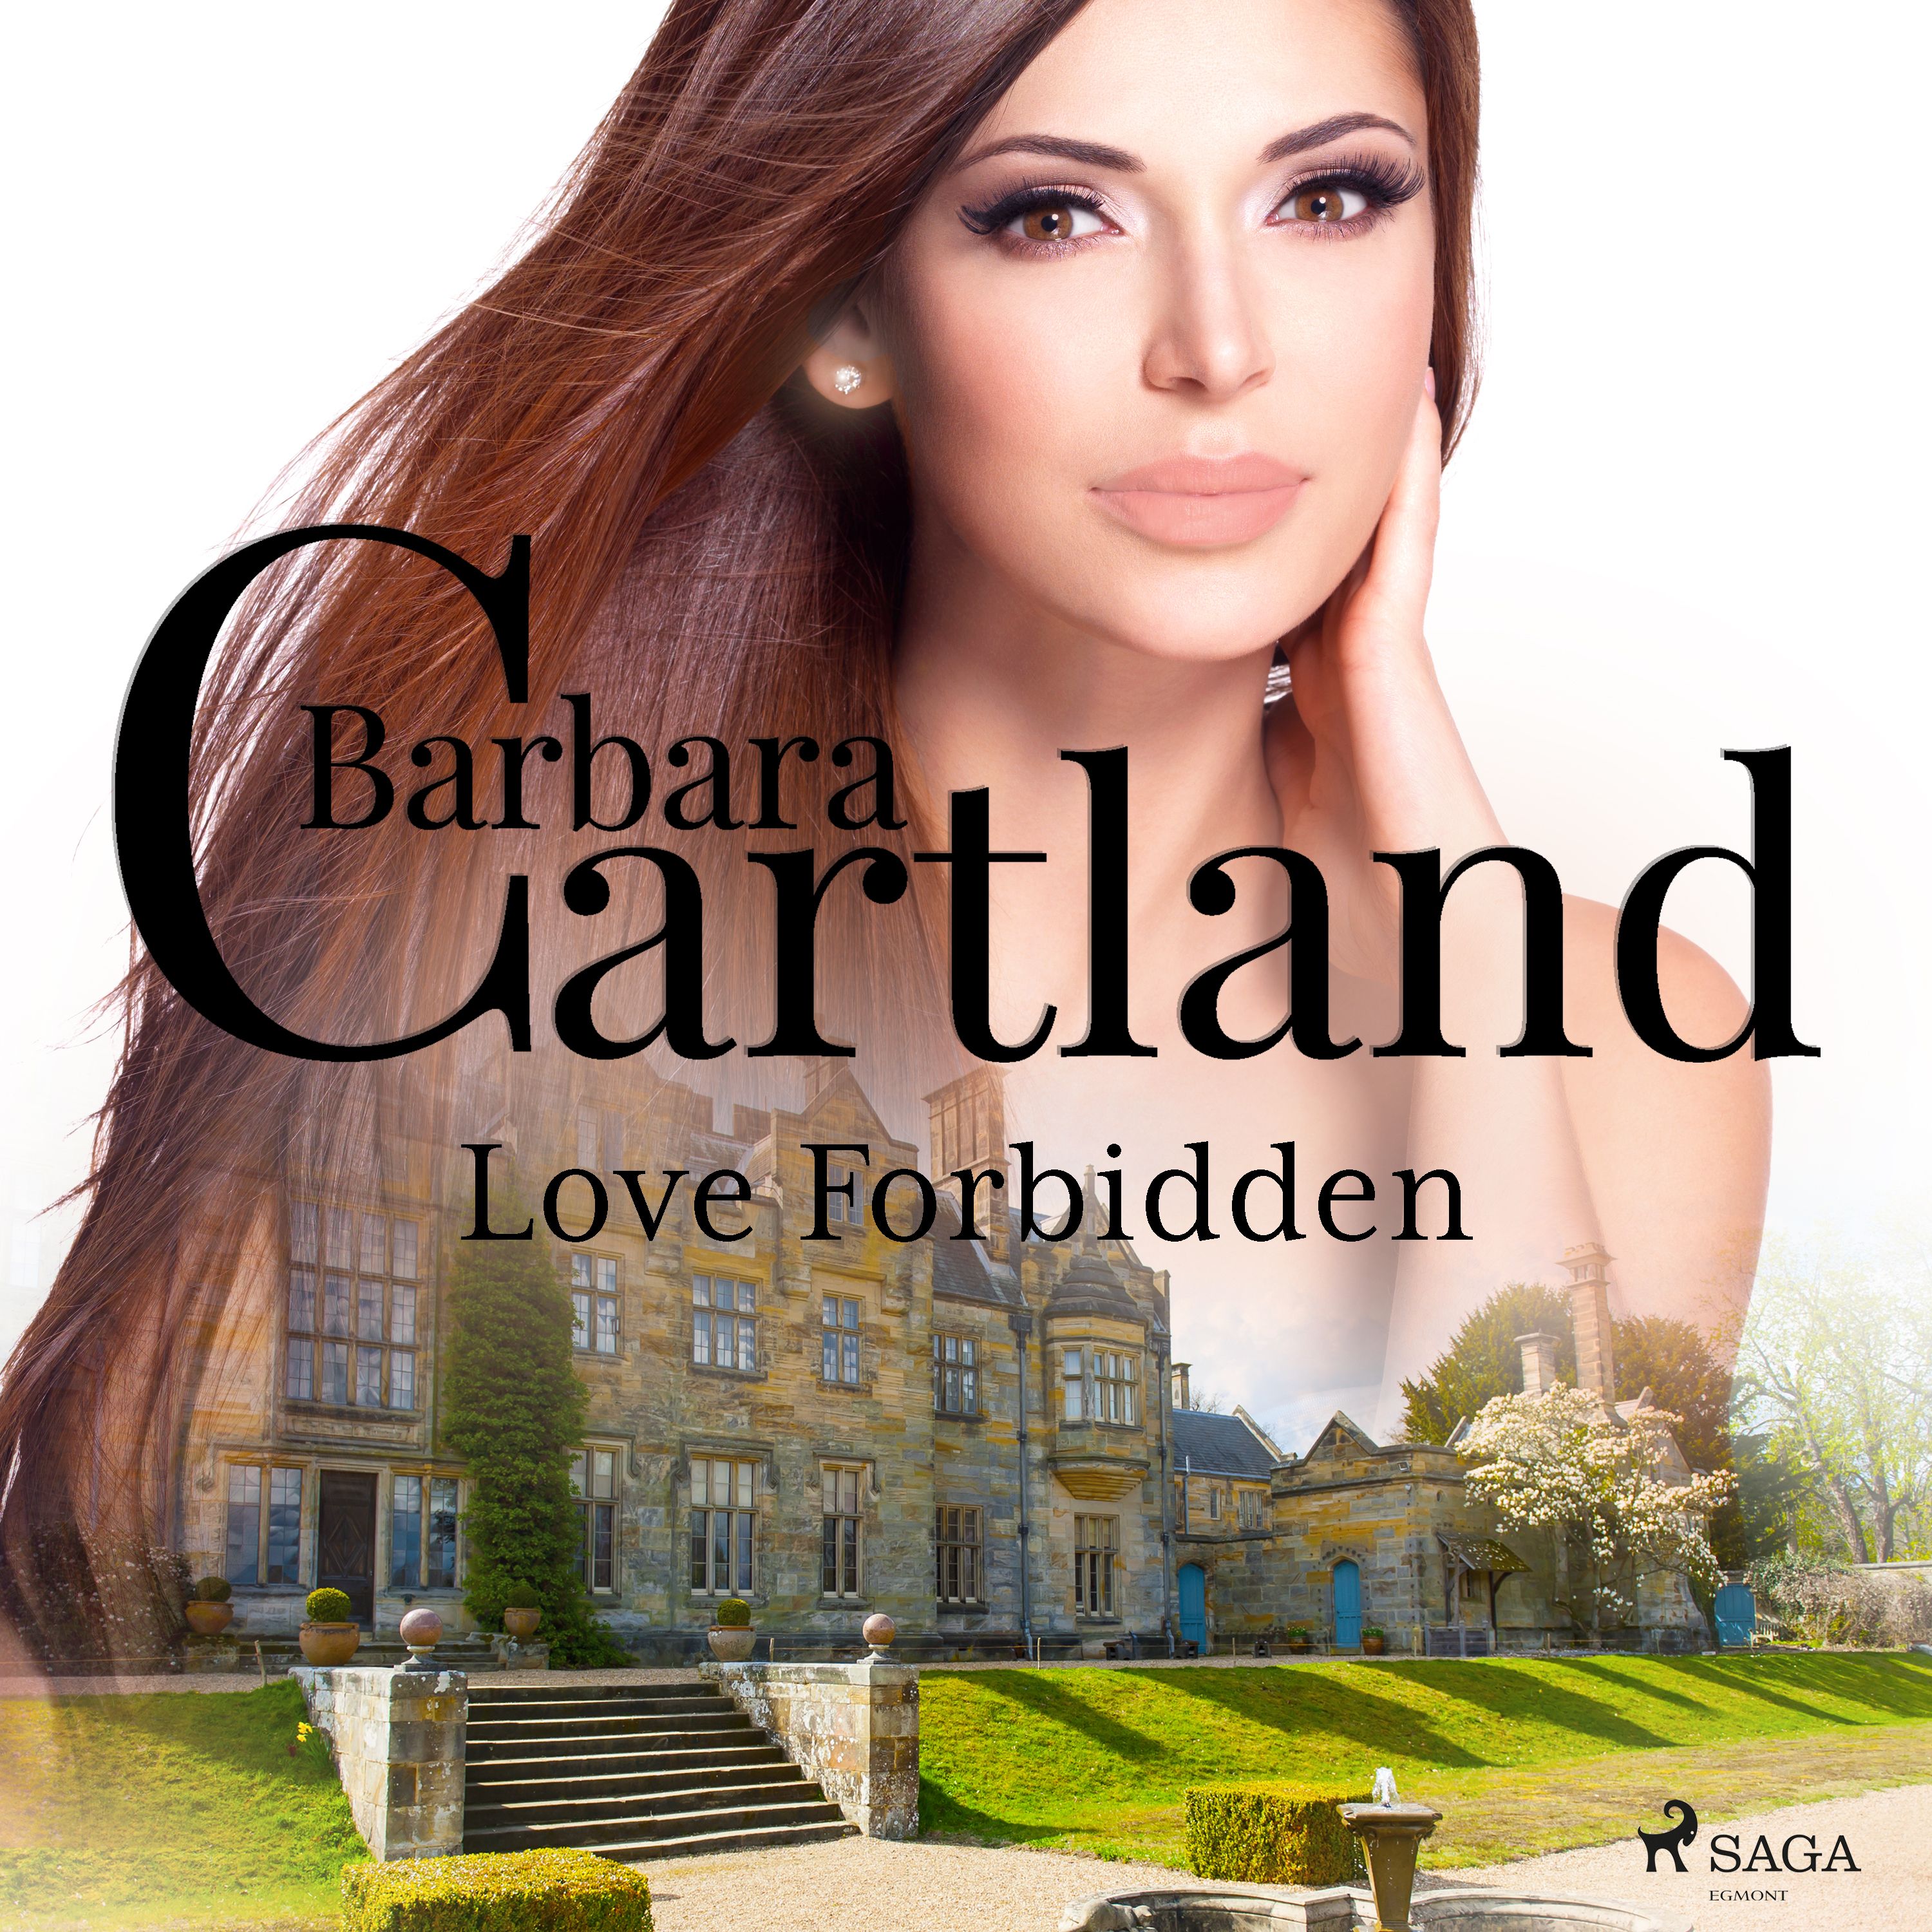 Love Forbidden, ljudbok av Barbara Cartland